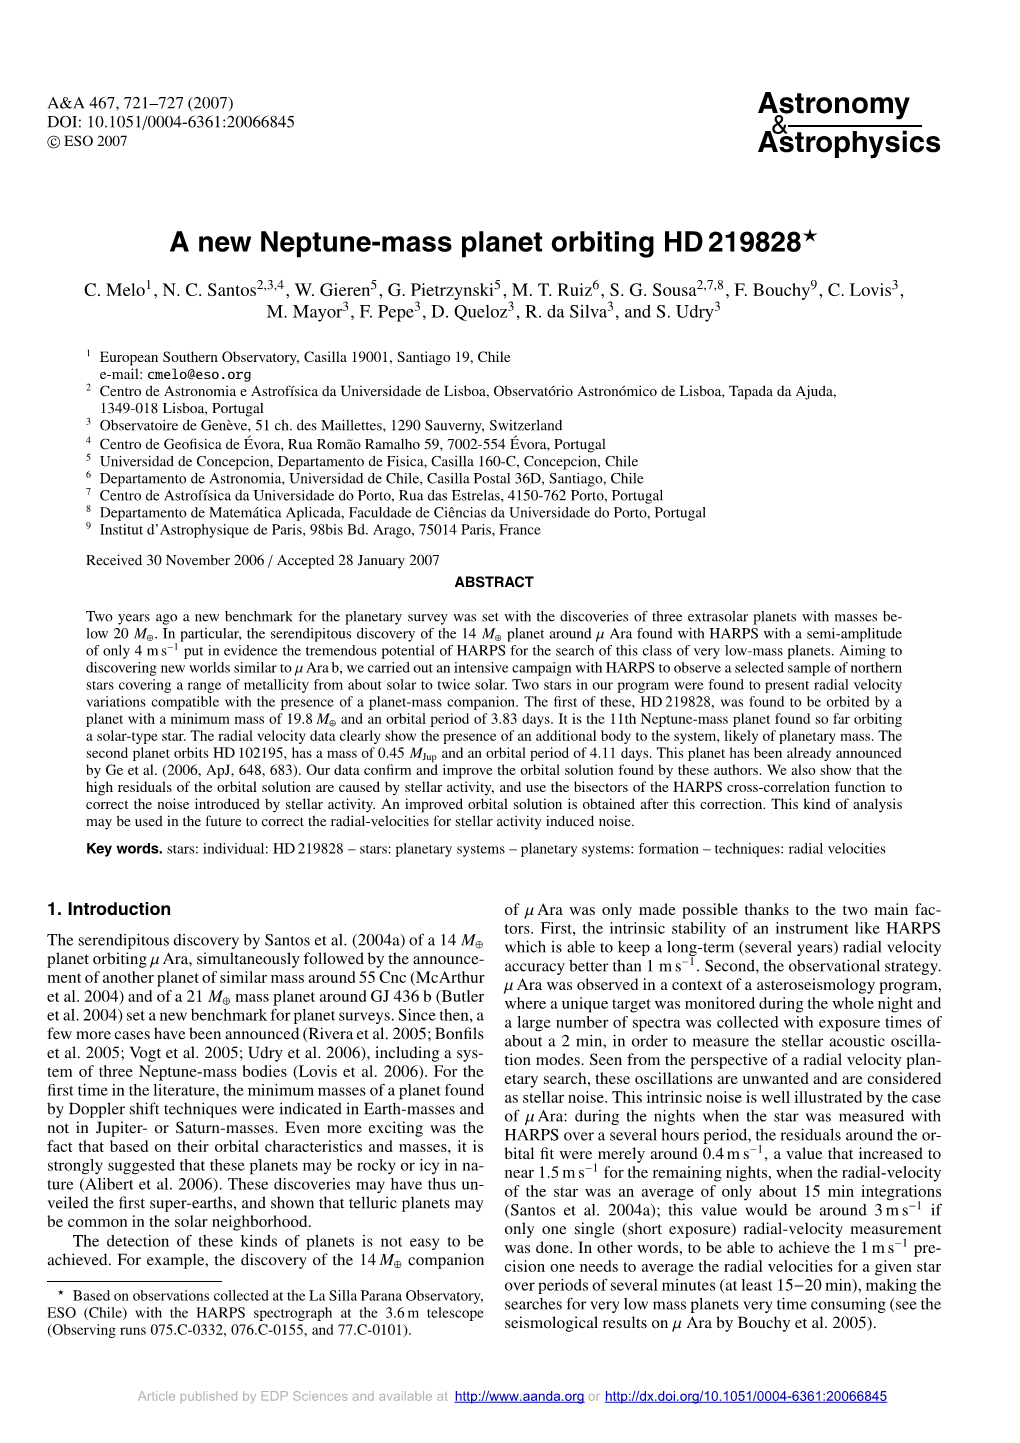 A New Neptune-Mass Planet Orbiting HD 219828